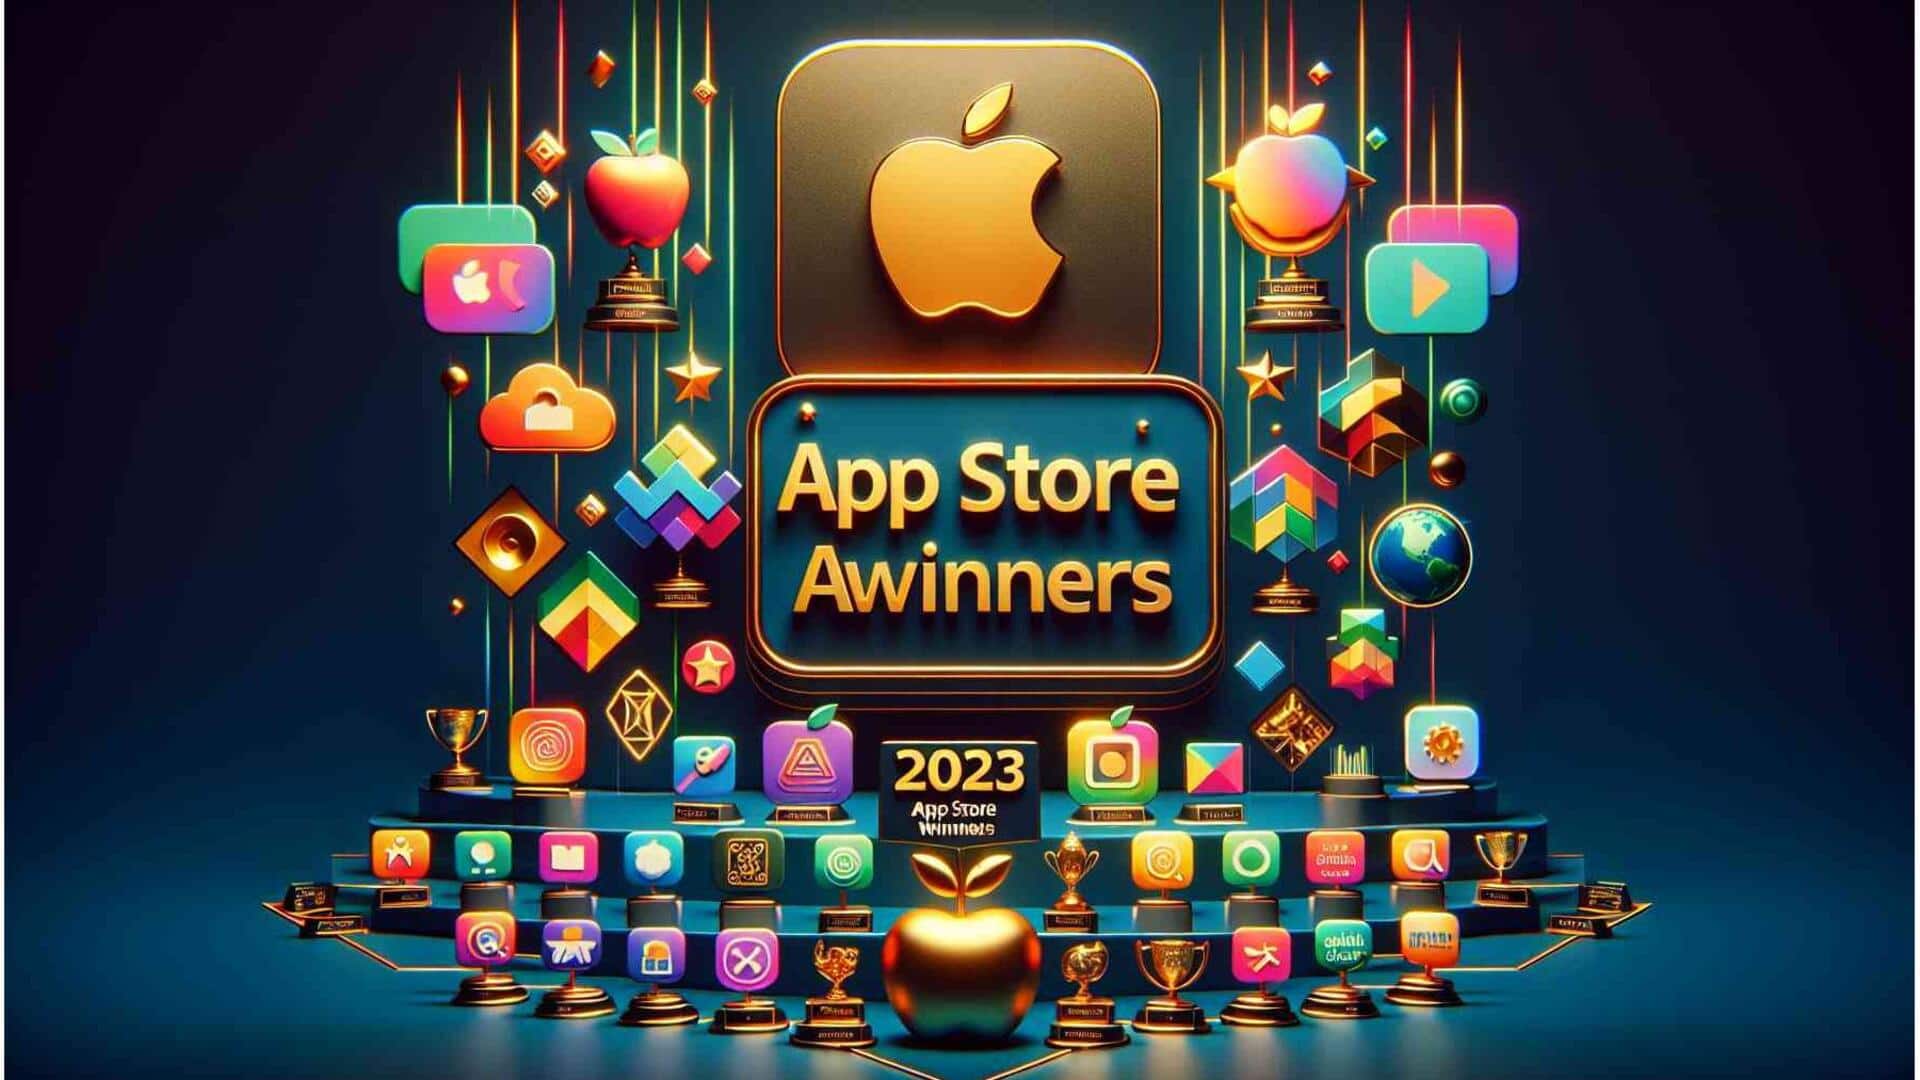 Apple's 2023 App Store Award winners revealed: Check list